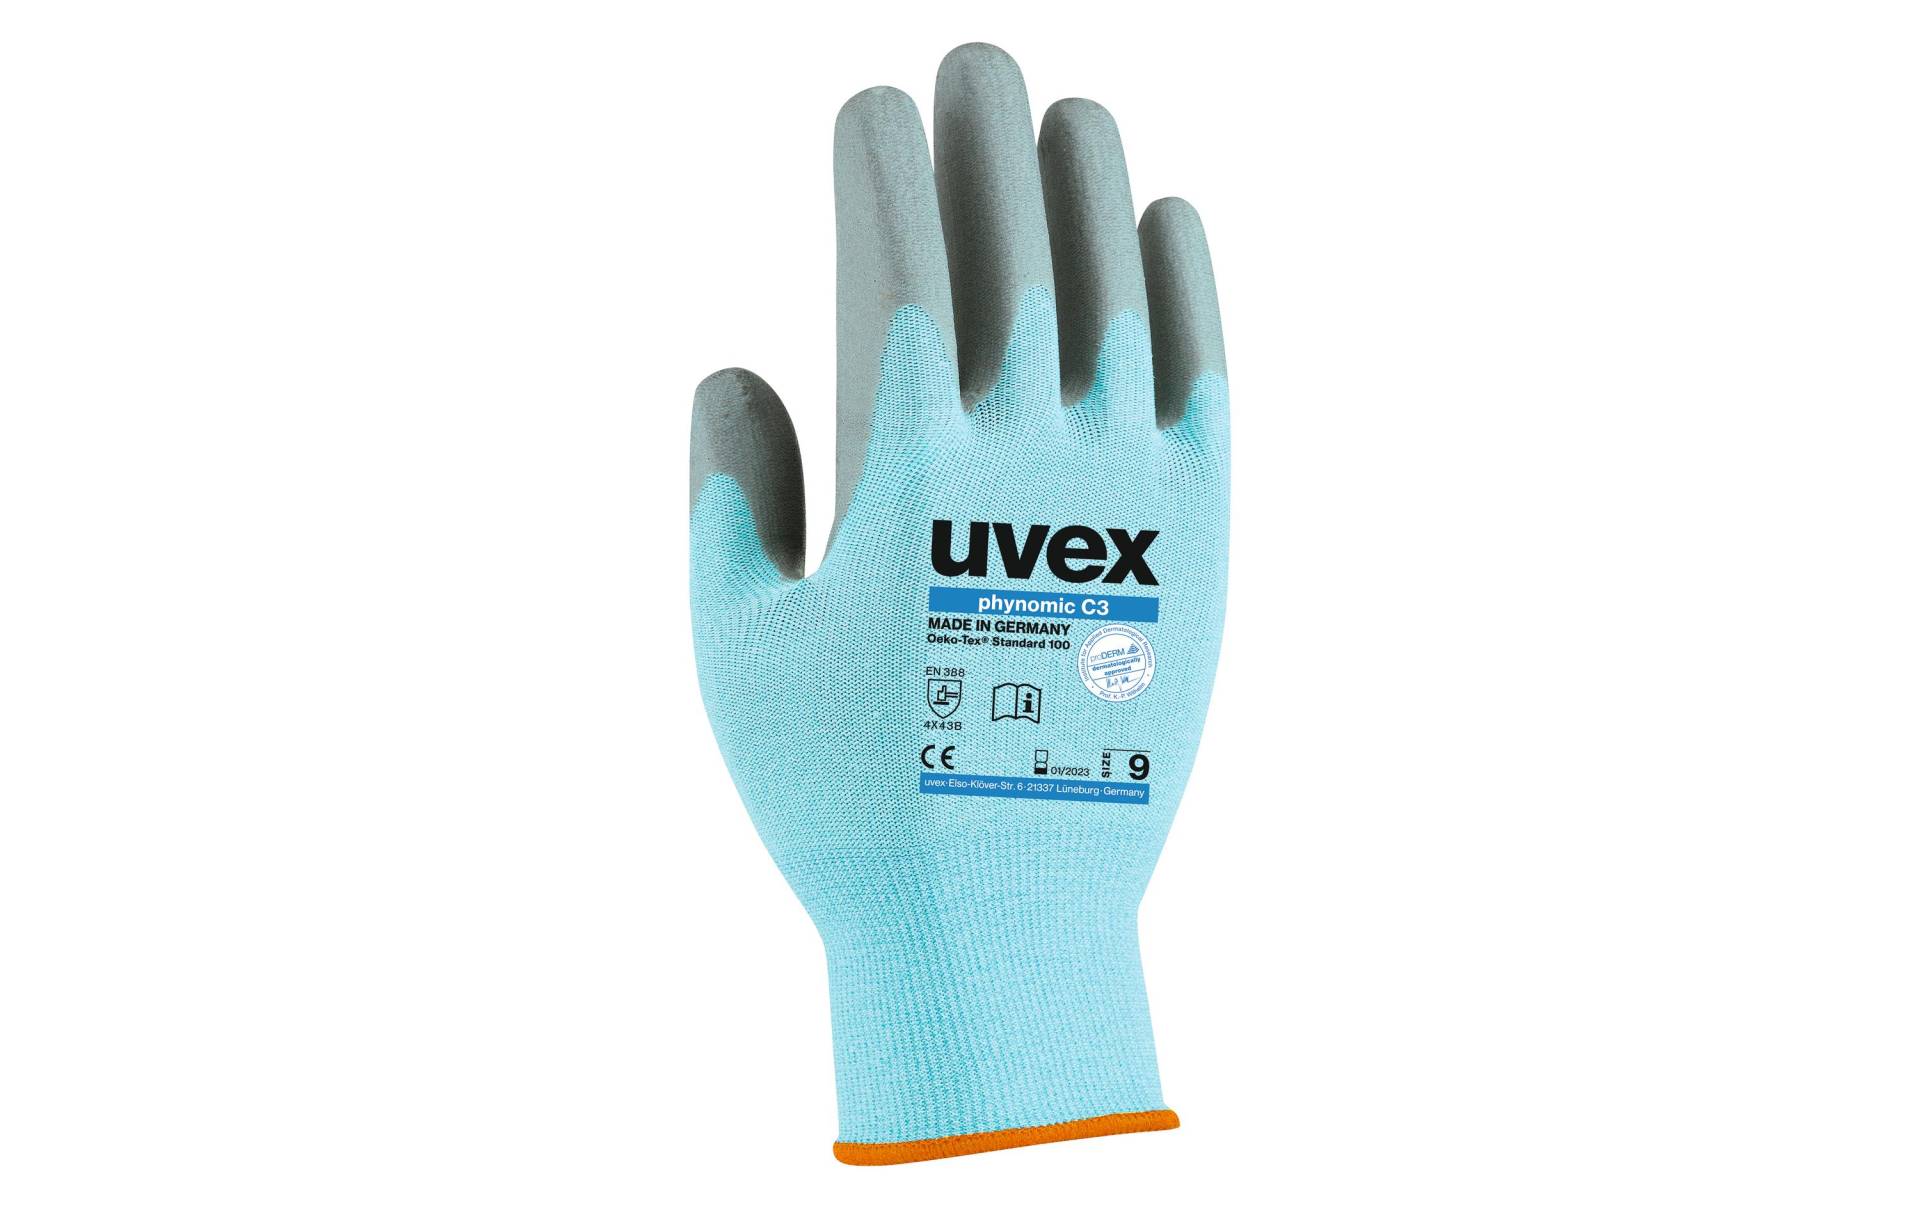 Uvex Gartenhandschuhe »Uvex Schnittschutz-Handsch. phynomic C3« von Uvex